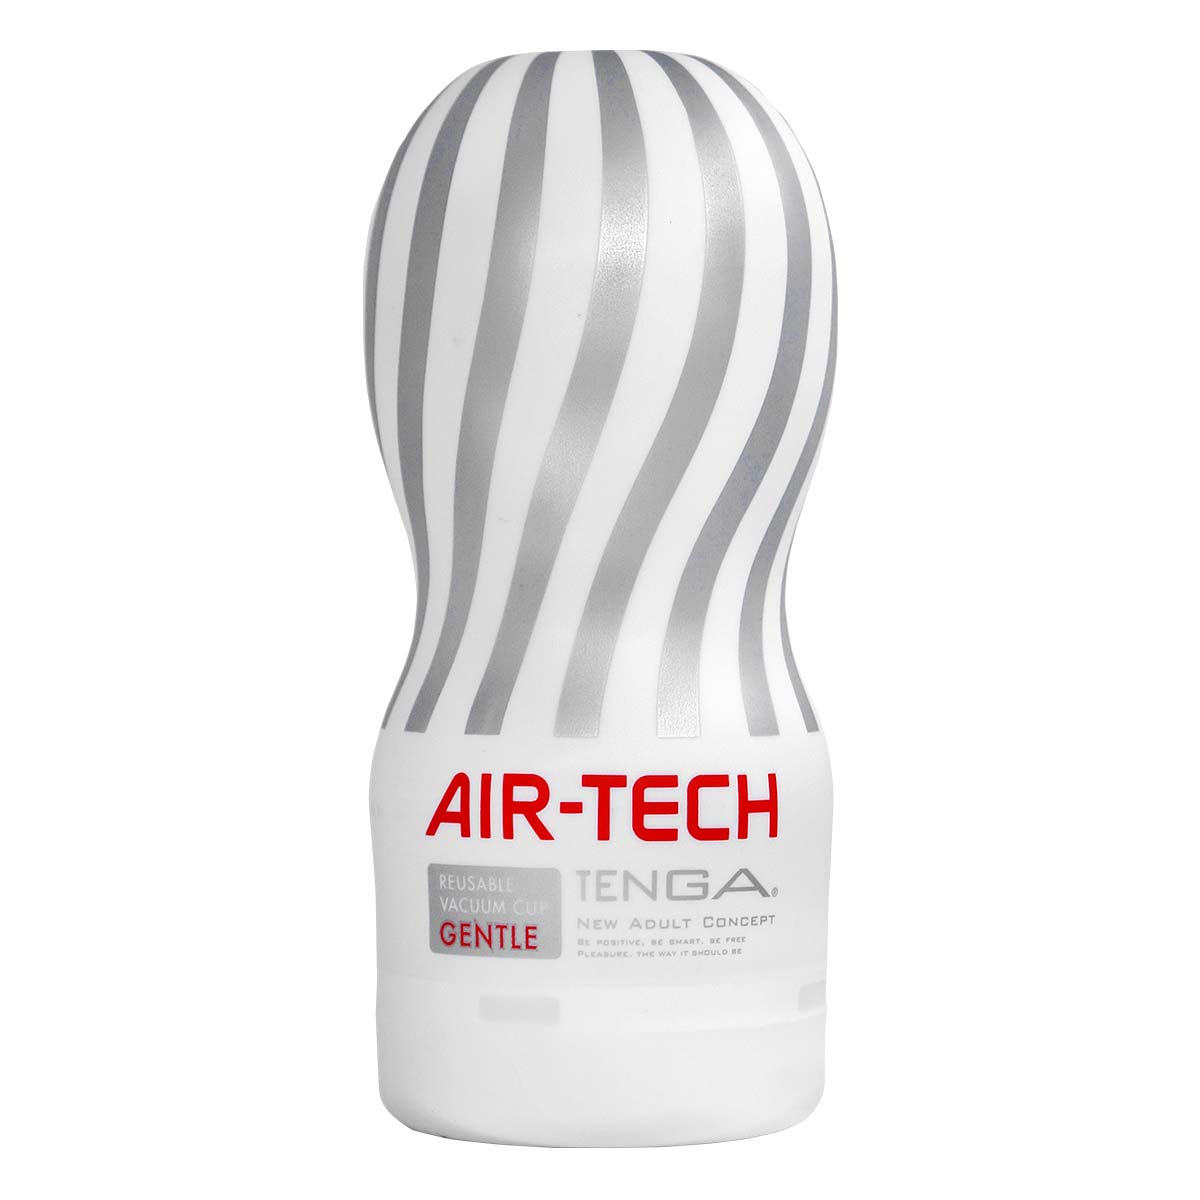 TENGA AIR-TECH 重复使用型真空杯 柔软型 （包装污损促销）-p_2